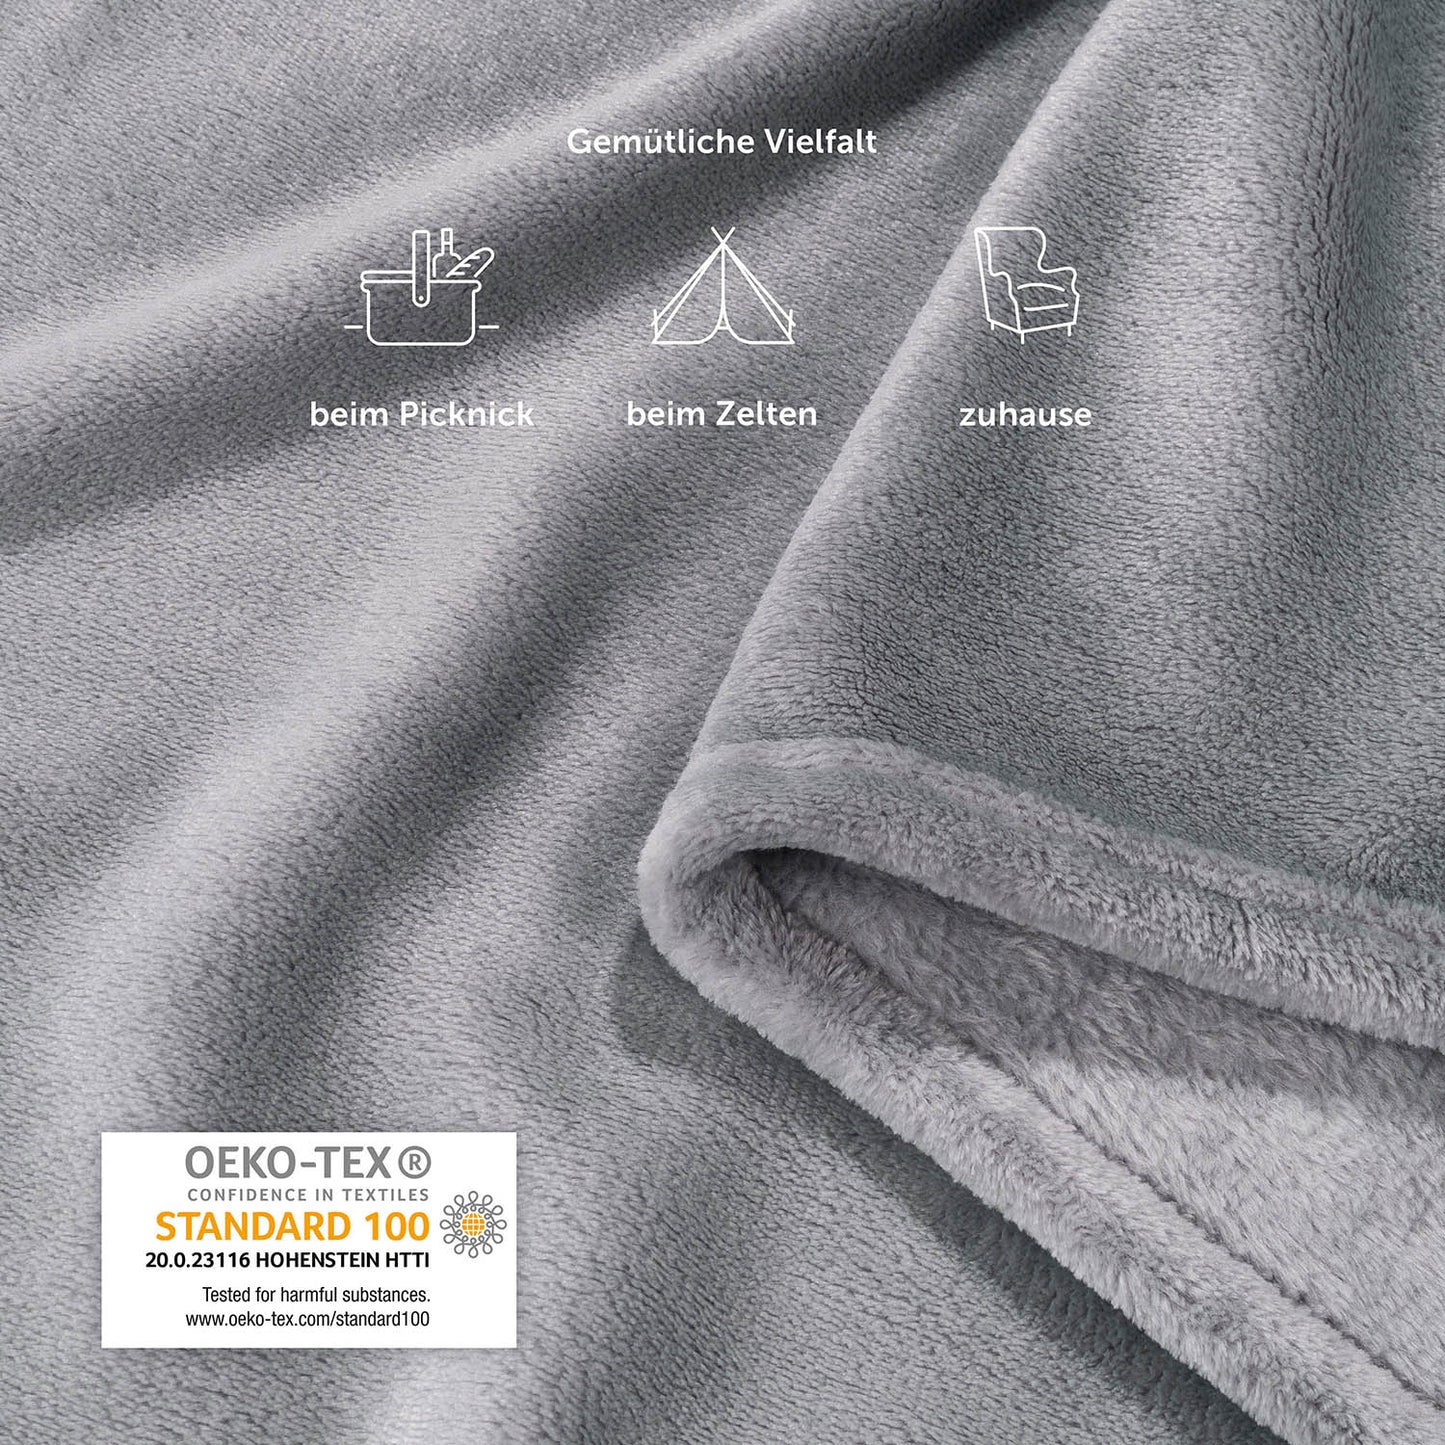 Gefaltete graue Fleecedecke mit Icons, die Anwendungsmöglichkeiten darstellen: beim Picknick, beim Zelten, zuhause.